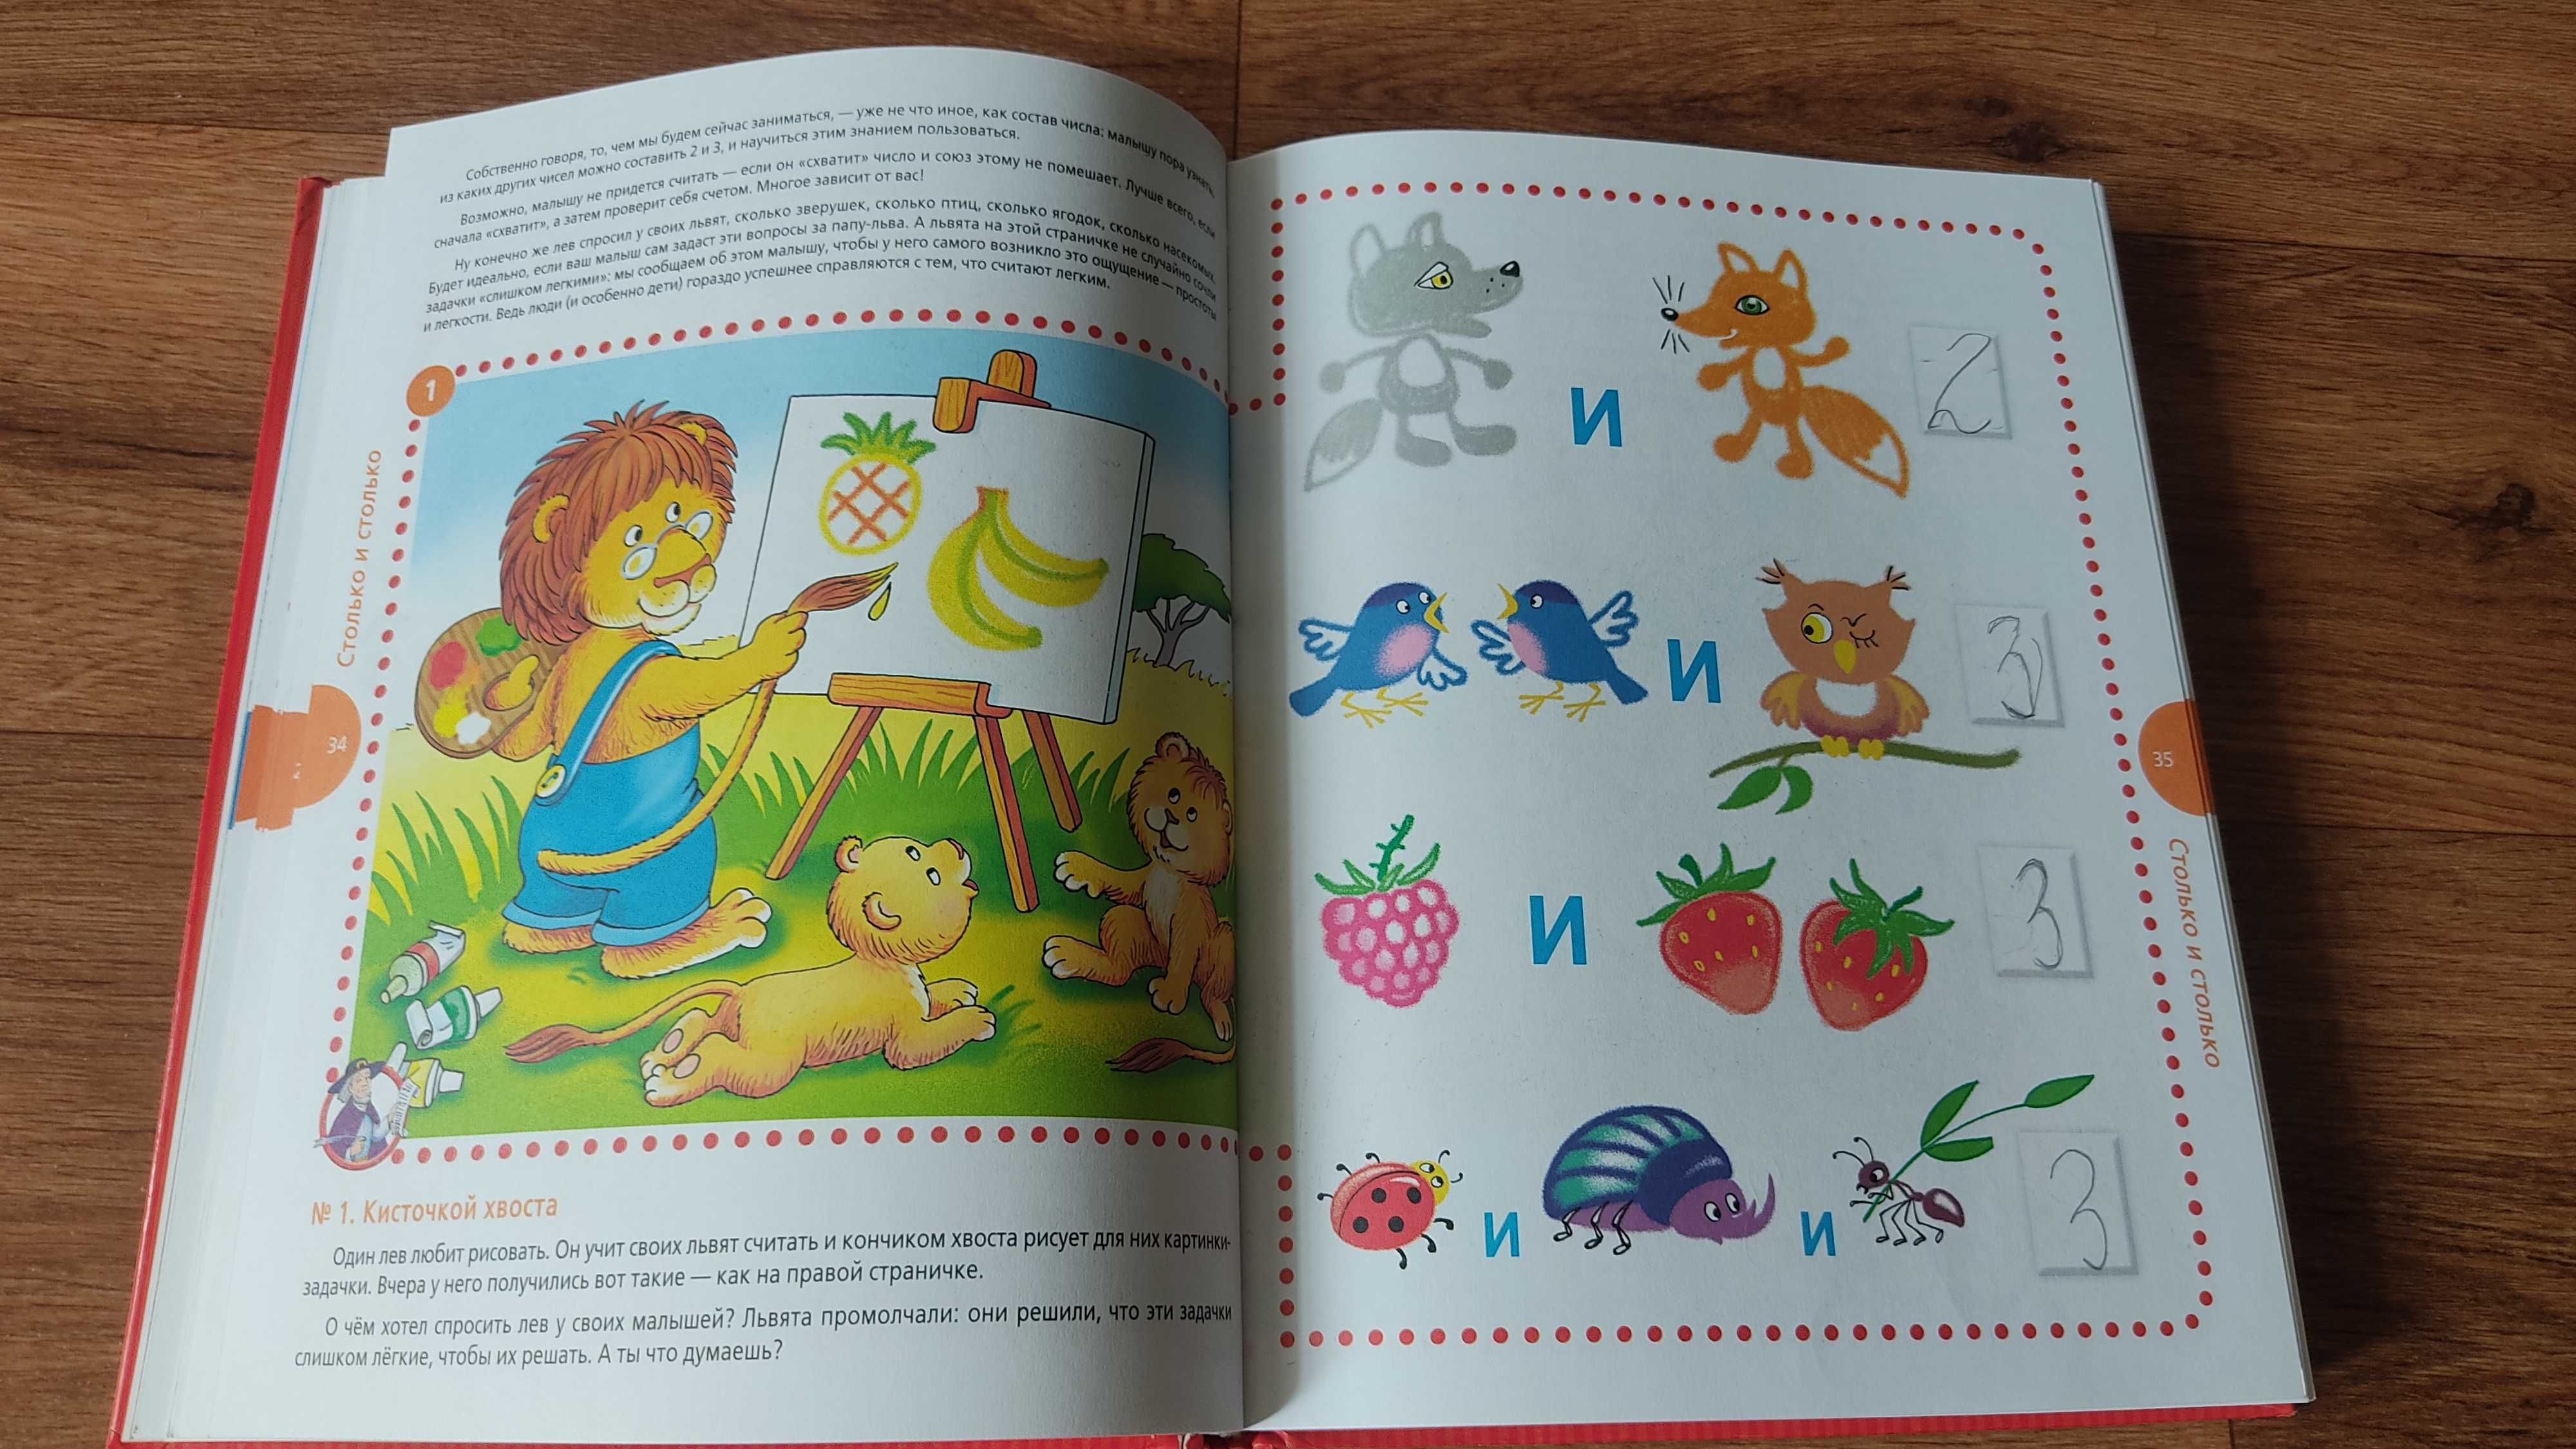 О. Соболева, В. Агафонов "Любимая математика", книга для деток 3-6 лет